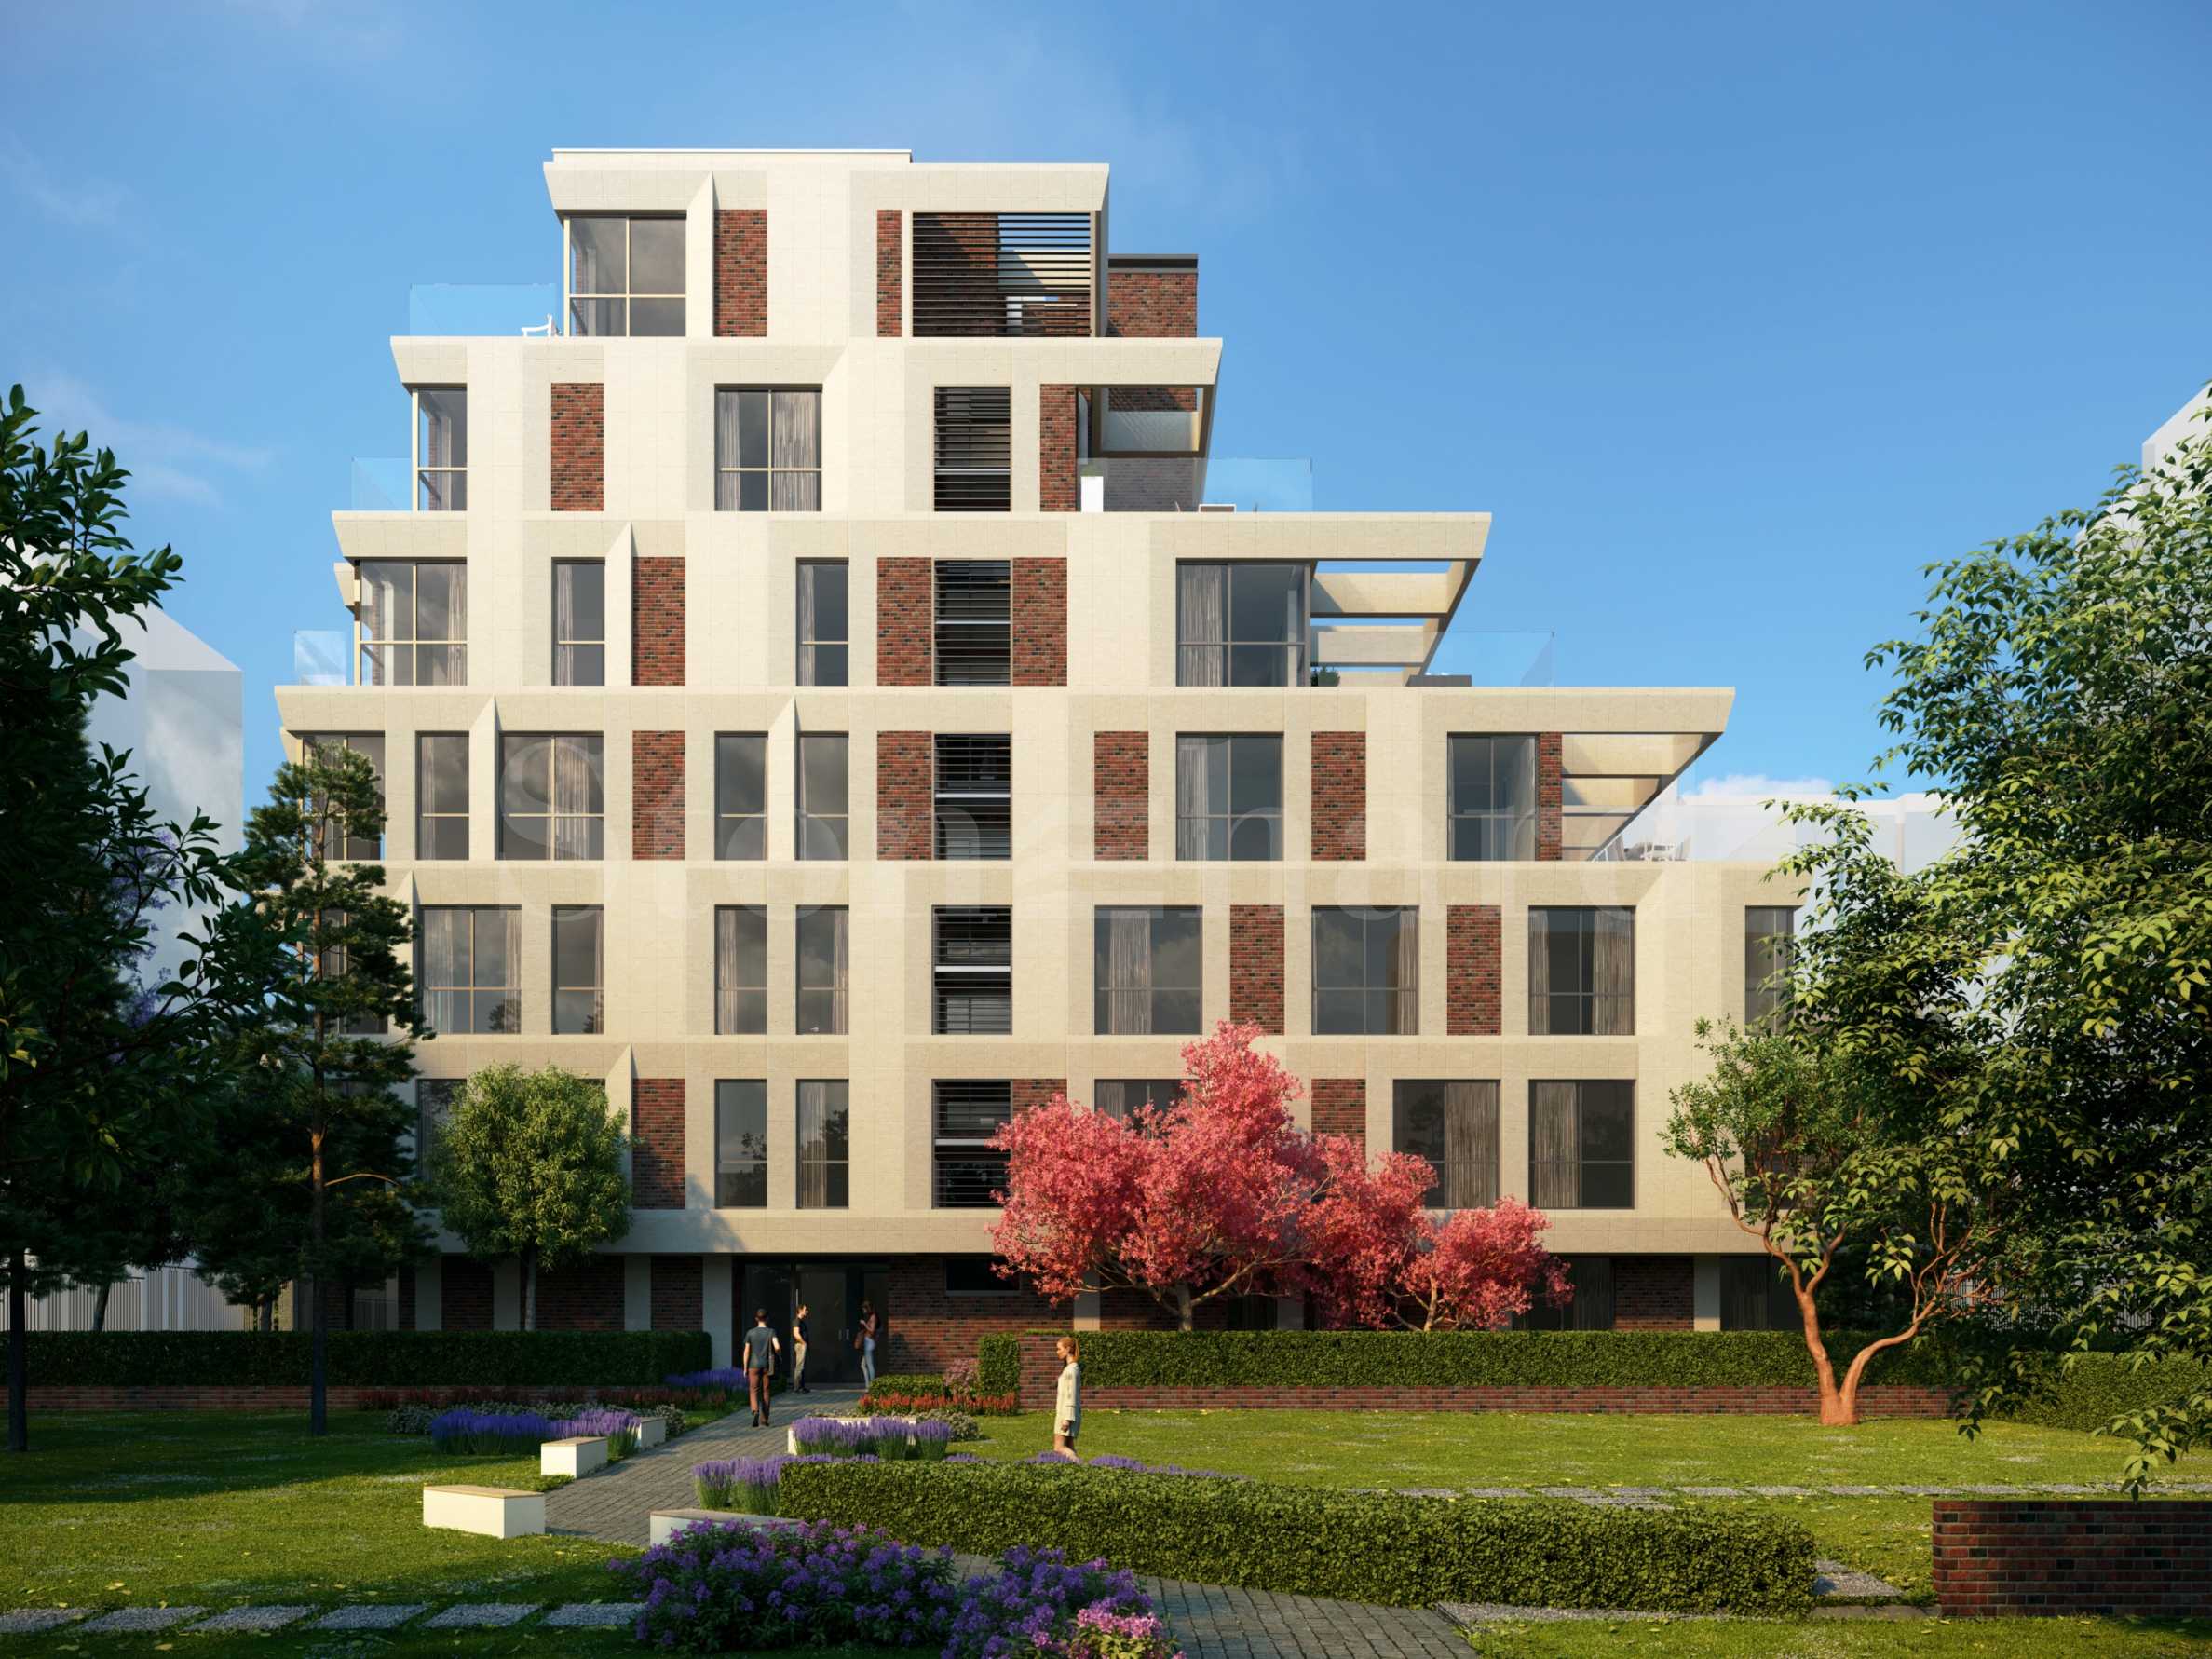 Само 17 просторни апартамента в нова сграда в южен квартал2 - Stonehard